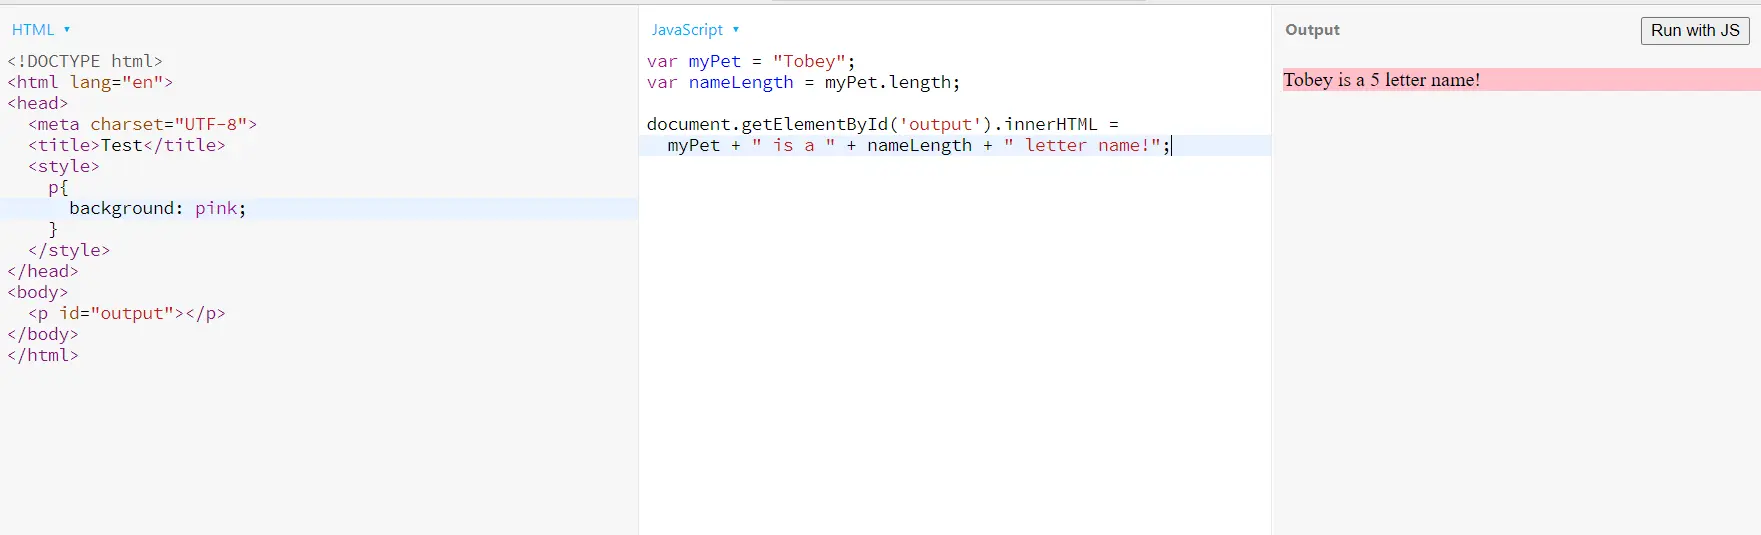 用户在 html 中定义的 js 变量